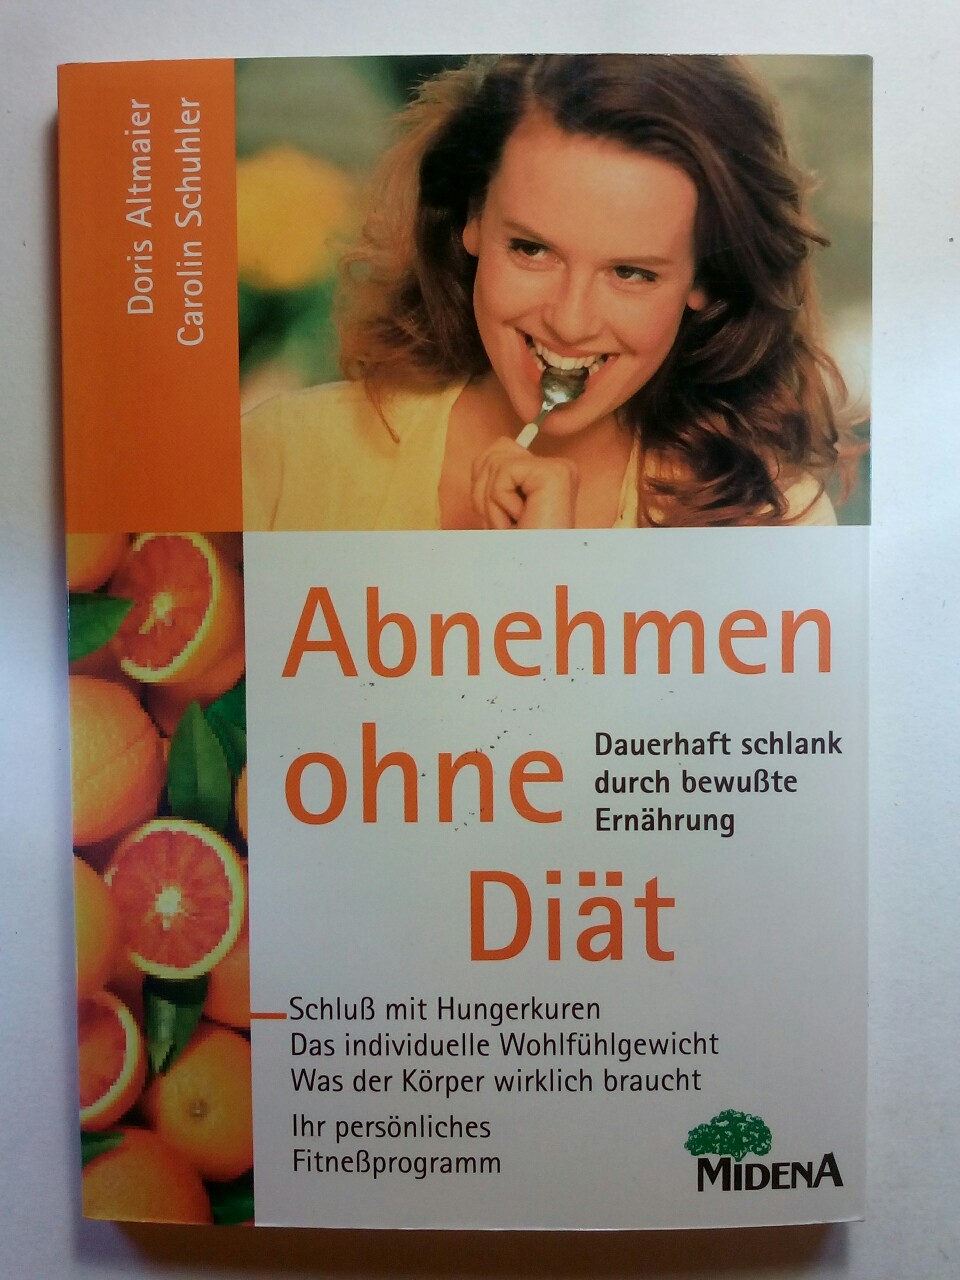 Abnehmen ohne Diät - Altmaier, Doris und Carolin Schuhler